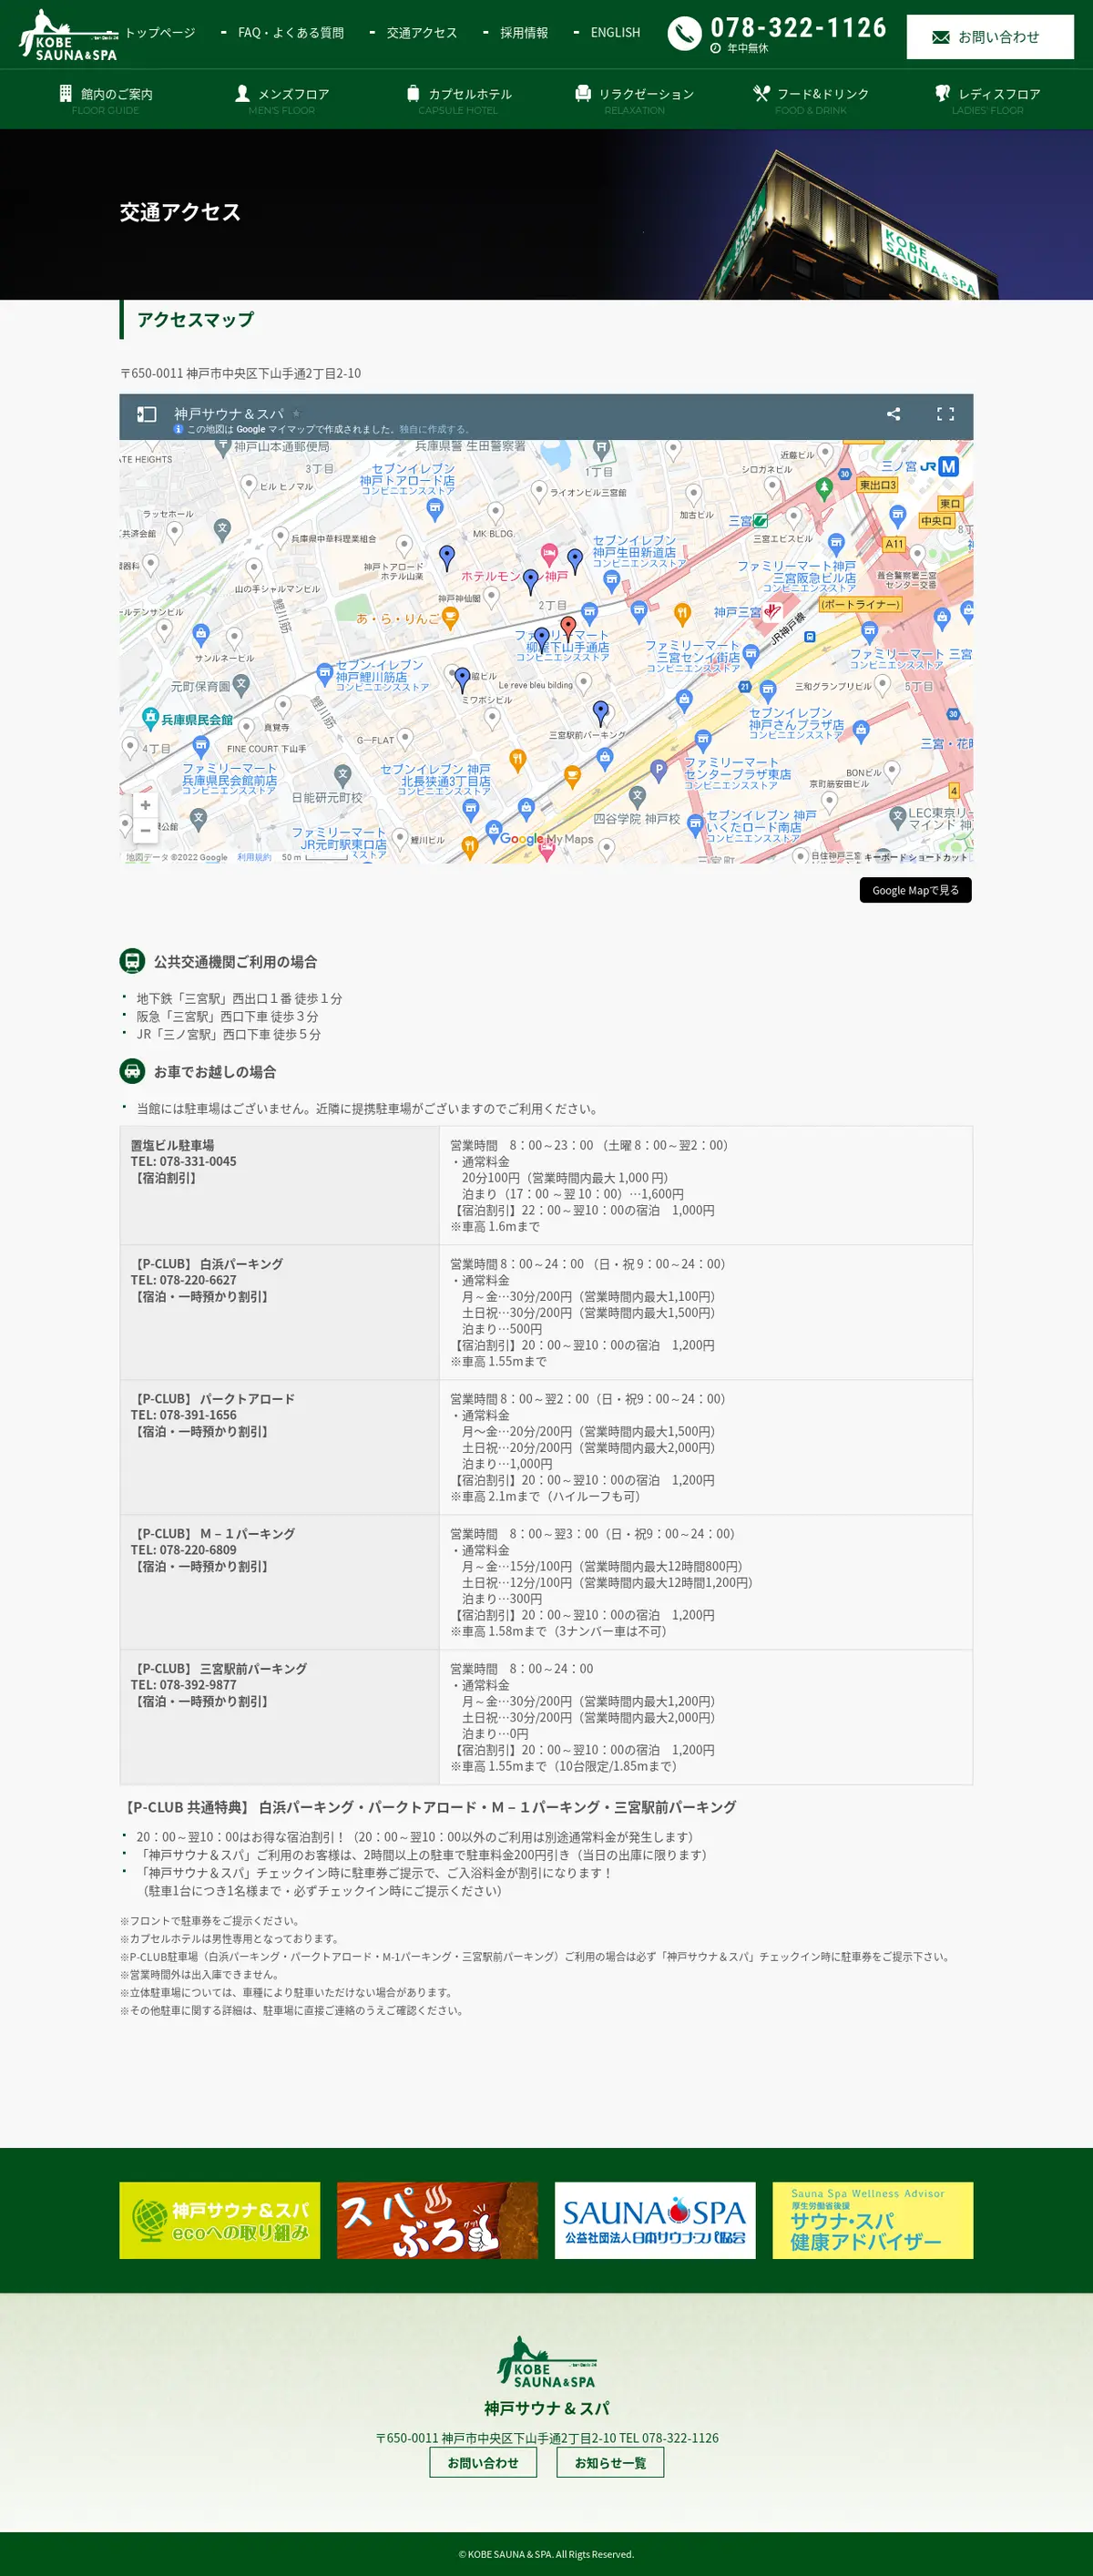 キャプチャ画面 会社名:神戸サウナ & スパプロジェクト名:KOBESAUNA＆SPA 画面名:アクセス・地図・マップ詳細 デバイス名:PCカテゴリ:なしタグ:アクセス・地図・マップ詳細,PC